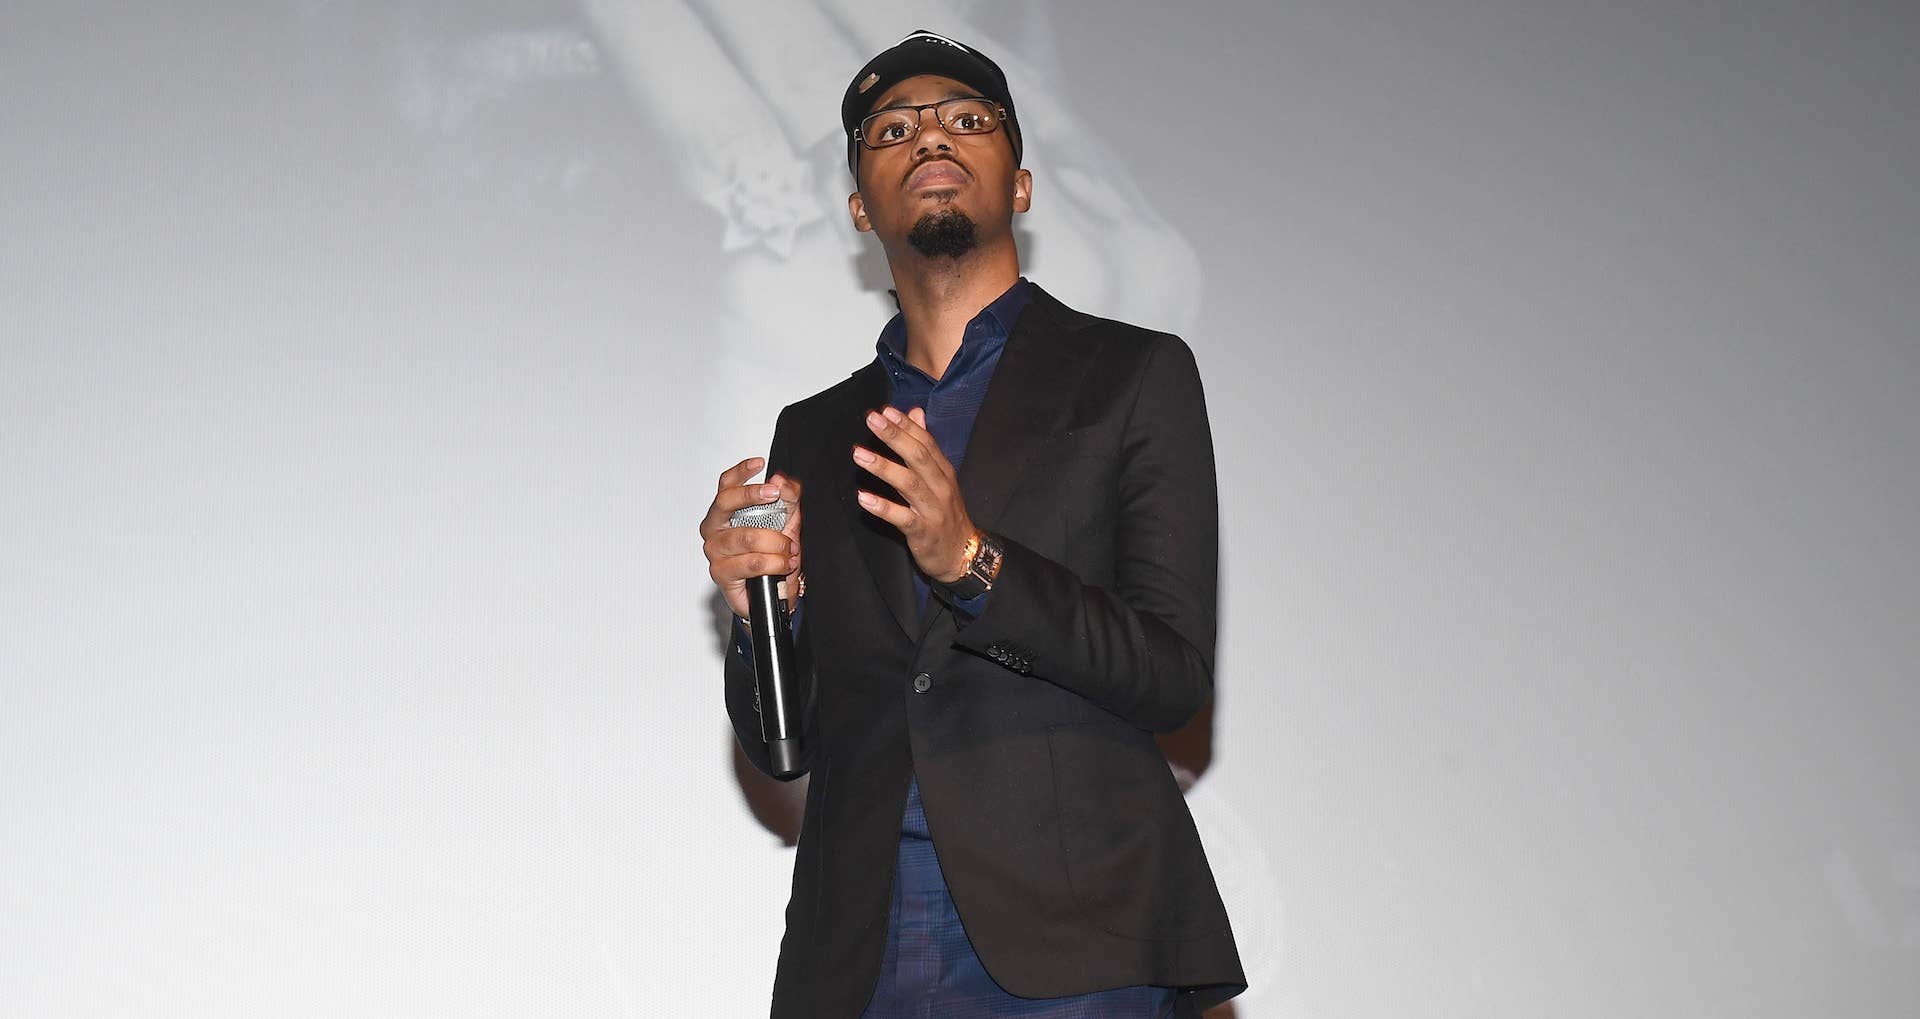 Metro Boomin speaks onstage during 'Uncut Gems' premiere in 2019